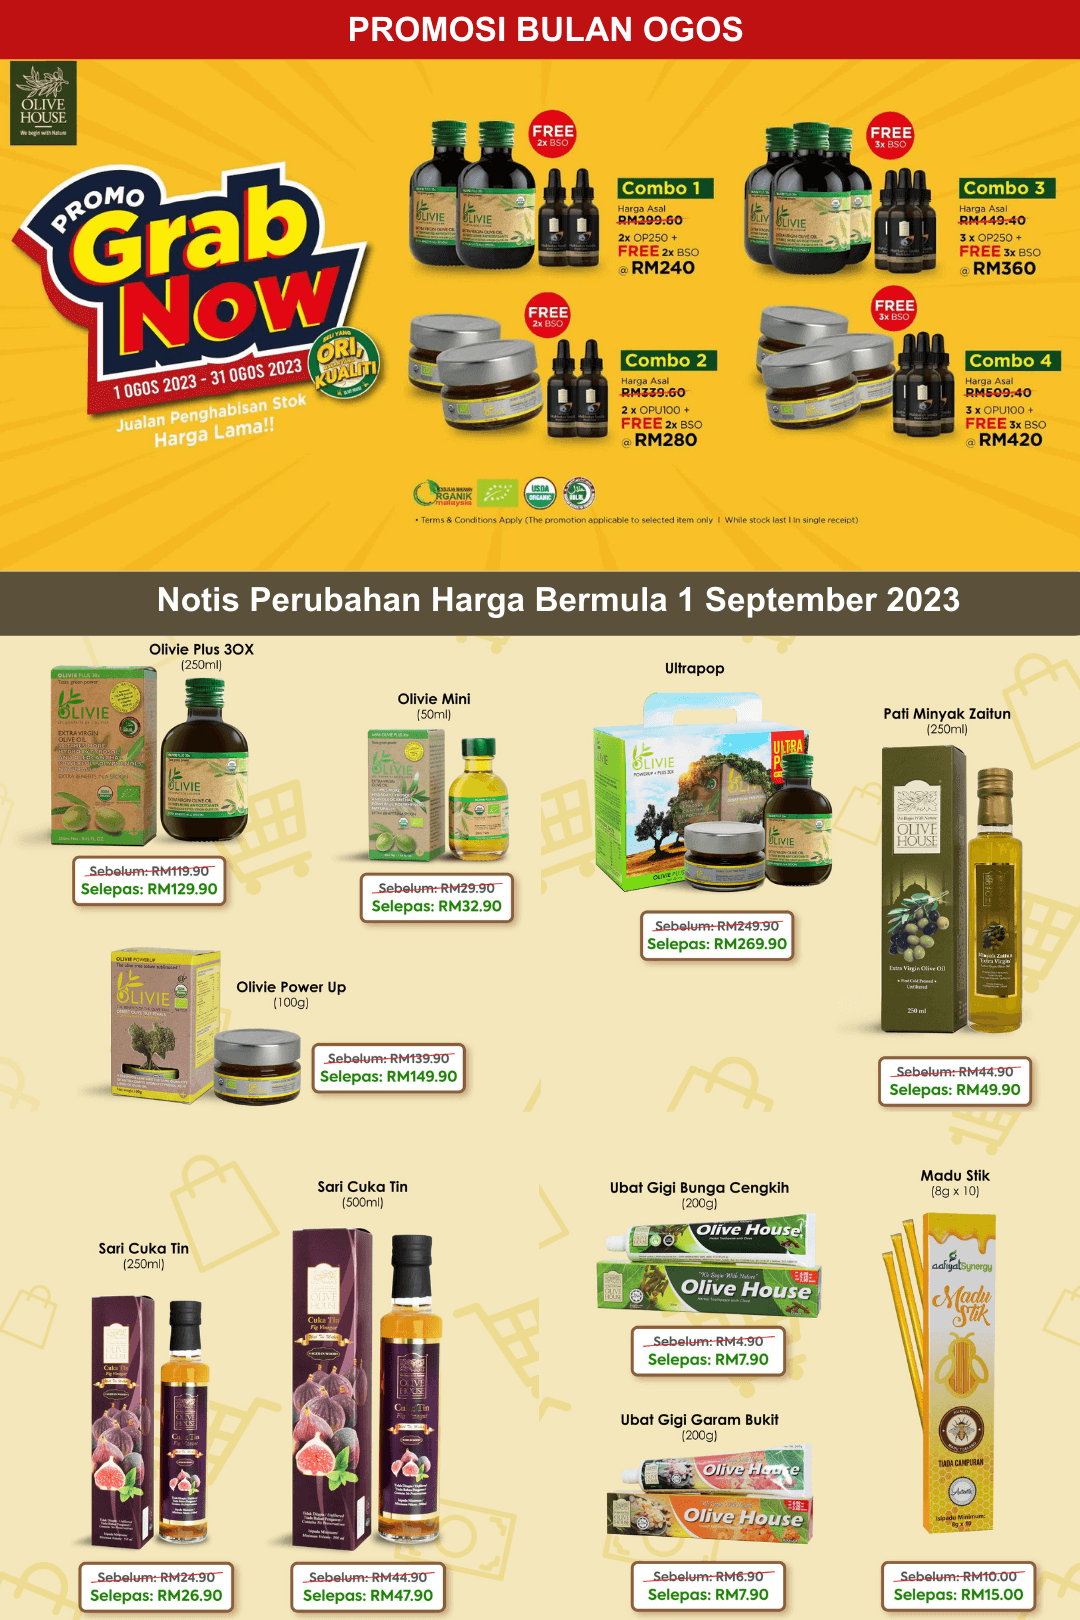 Promosi dan harga baru produk olive house